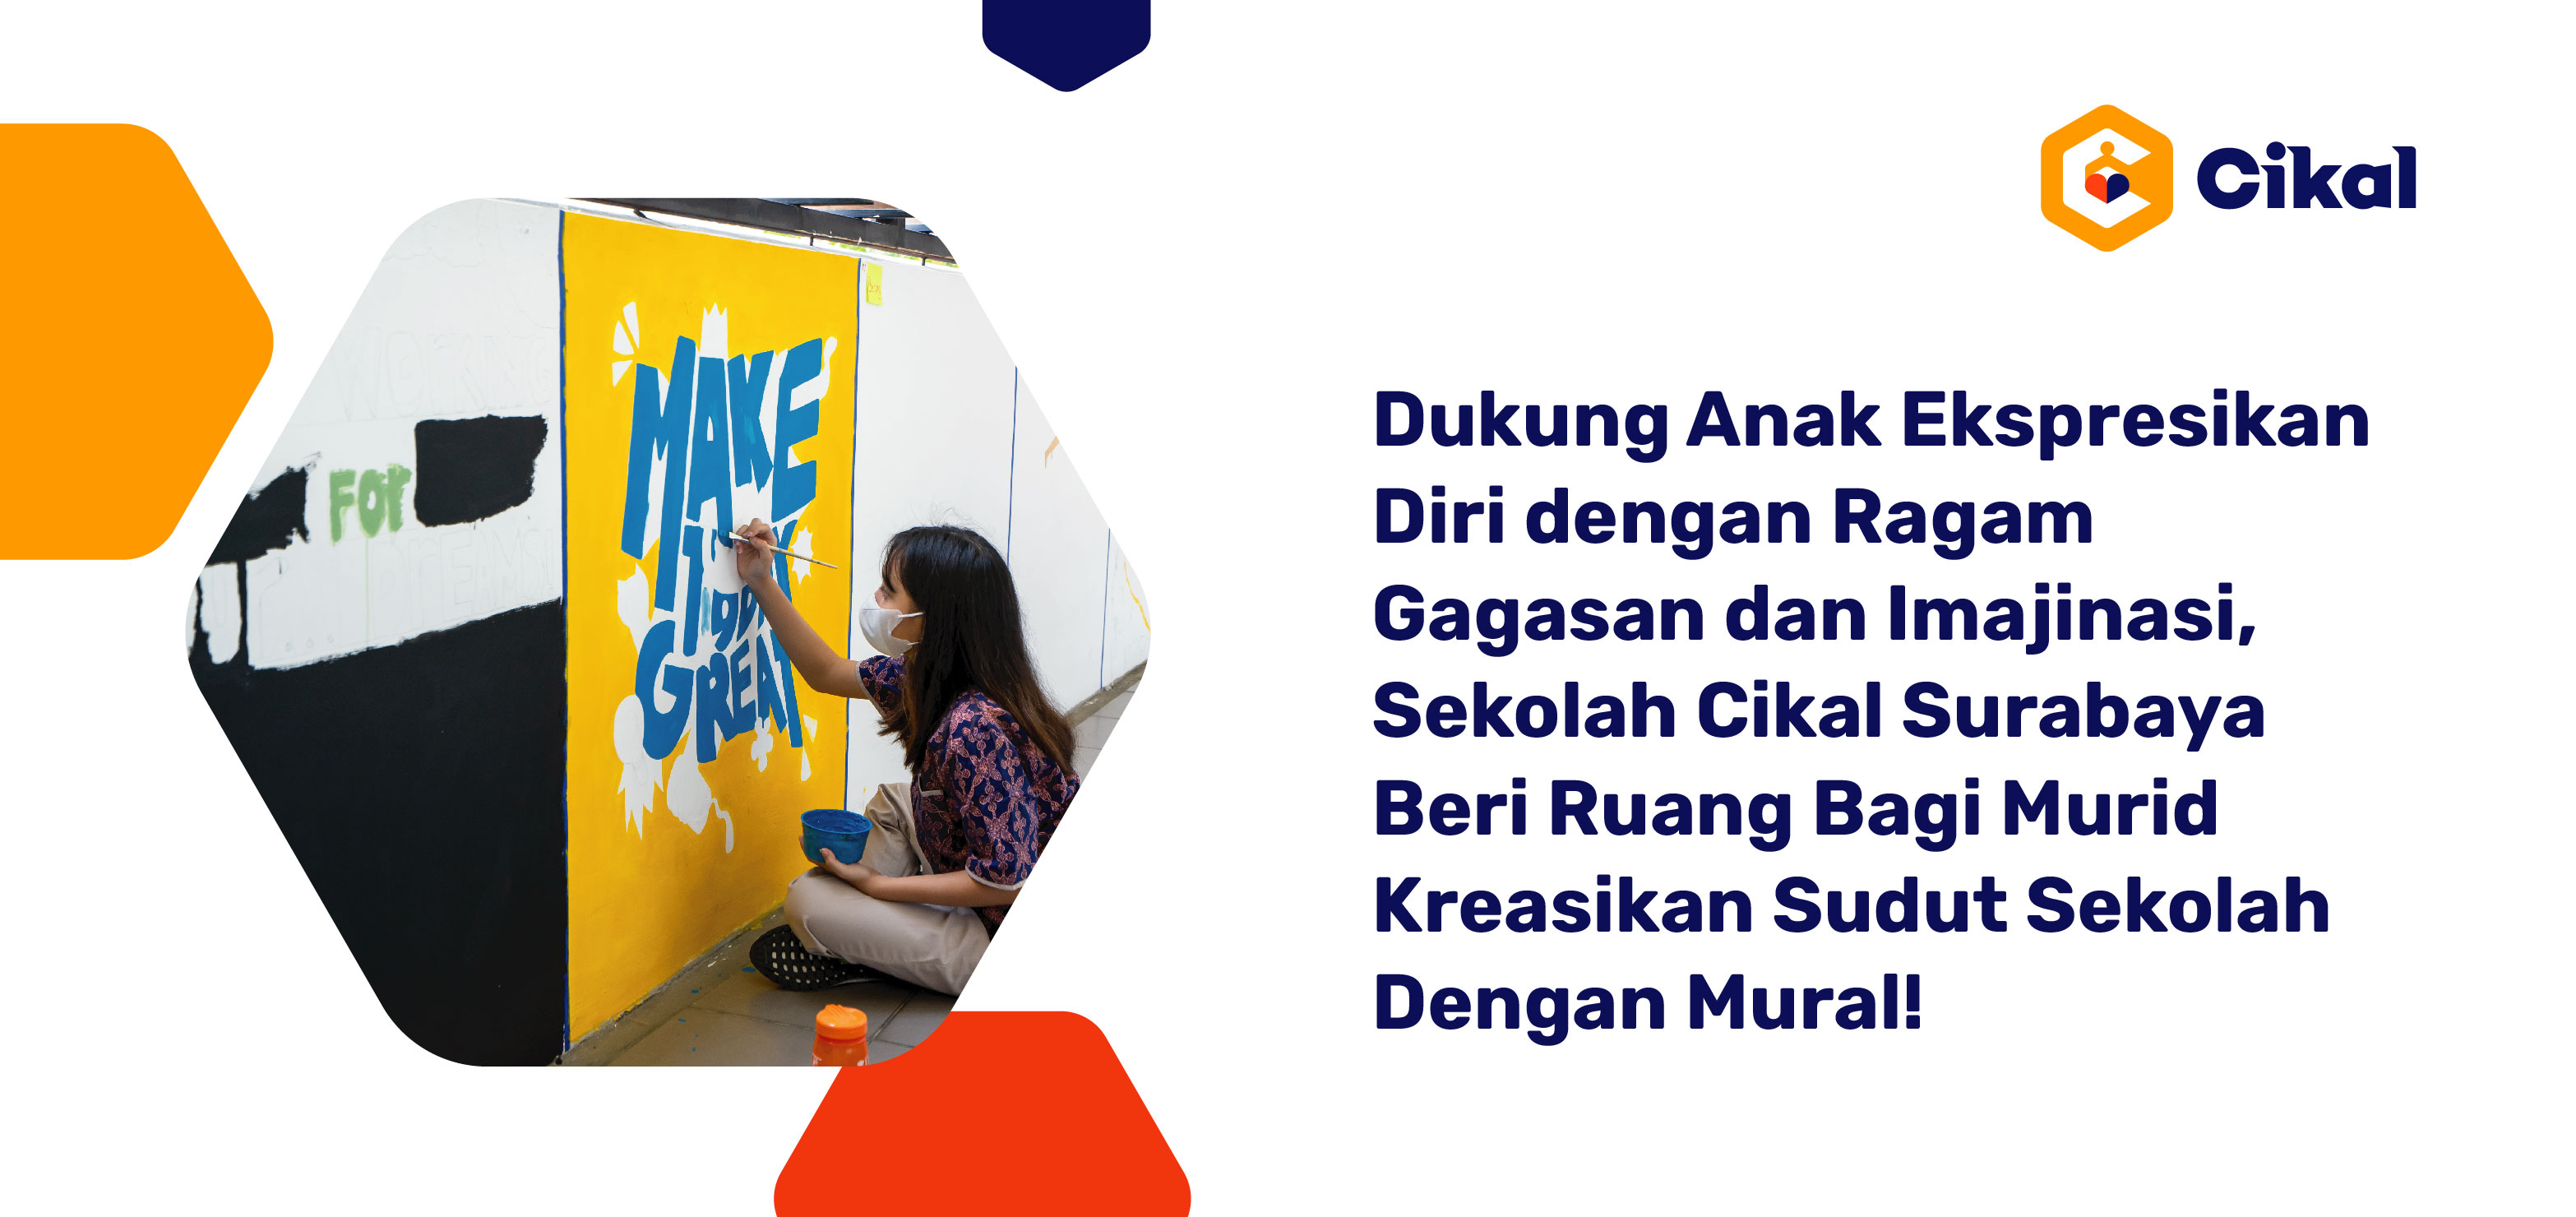 Dukung Anak Ekspresikan Diri dengan Ragam Gagasan dan Imajinasi, Sekolah Cikal Surabaya Beri Ruang Bagi Murid Kreasikan Sudut Sekolah Dengan Mural!